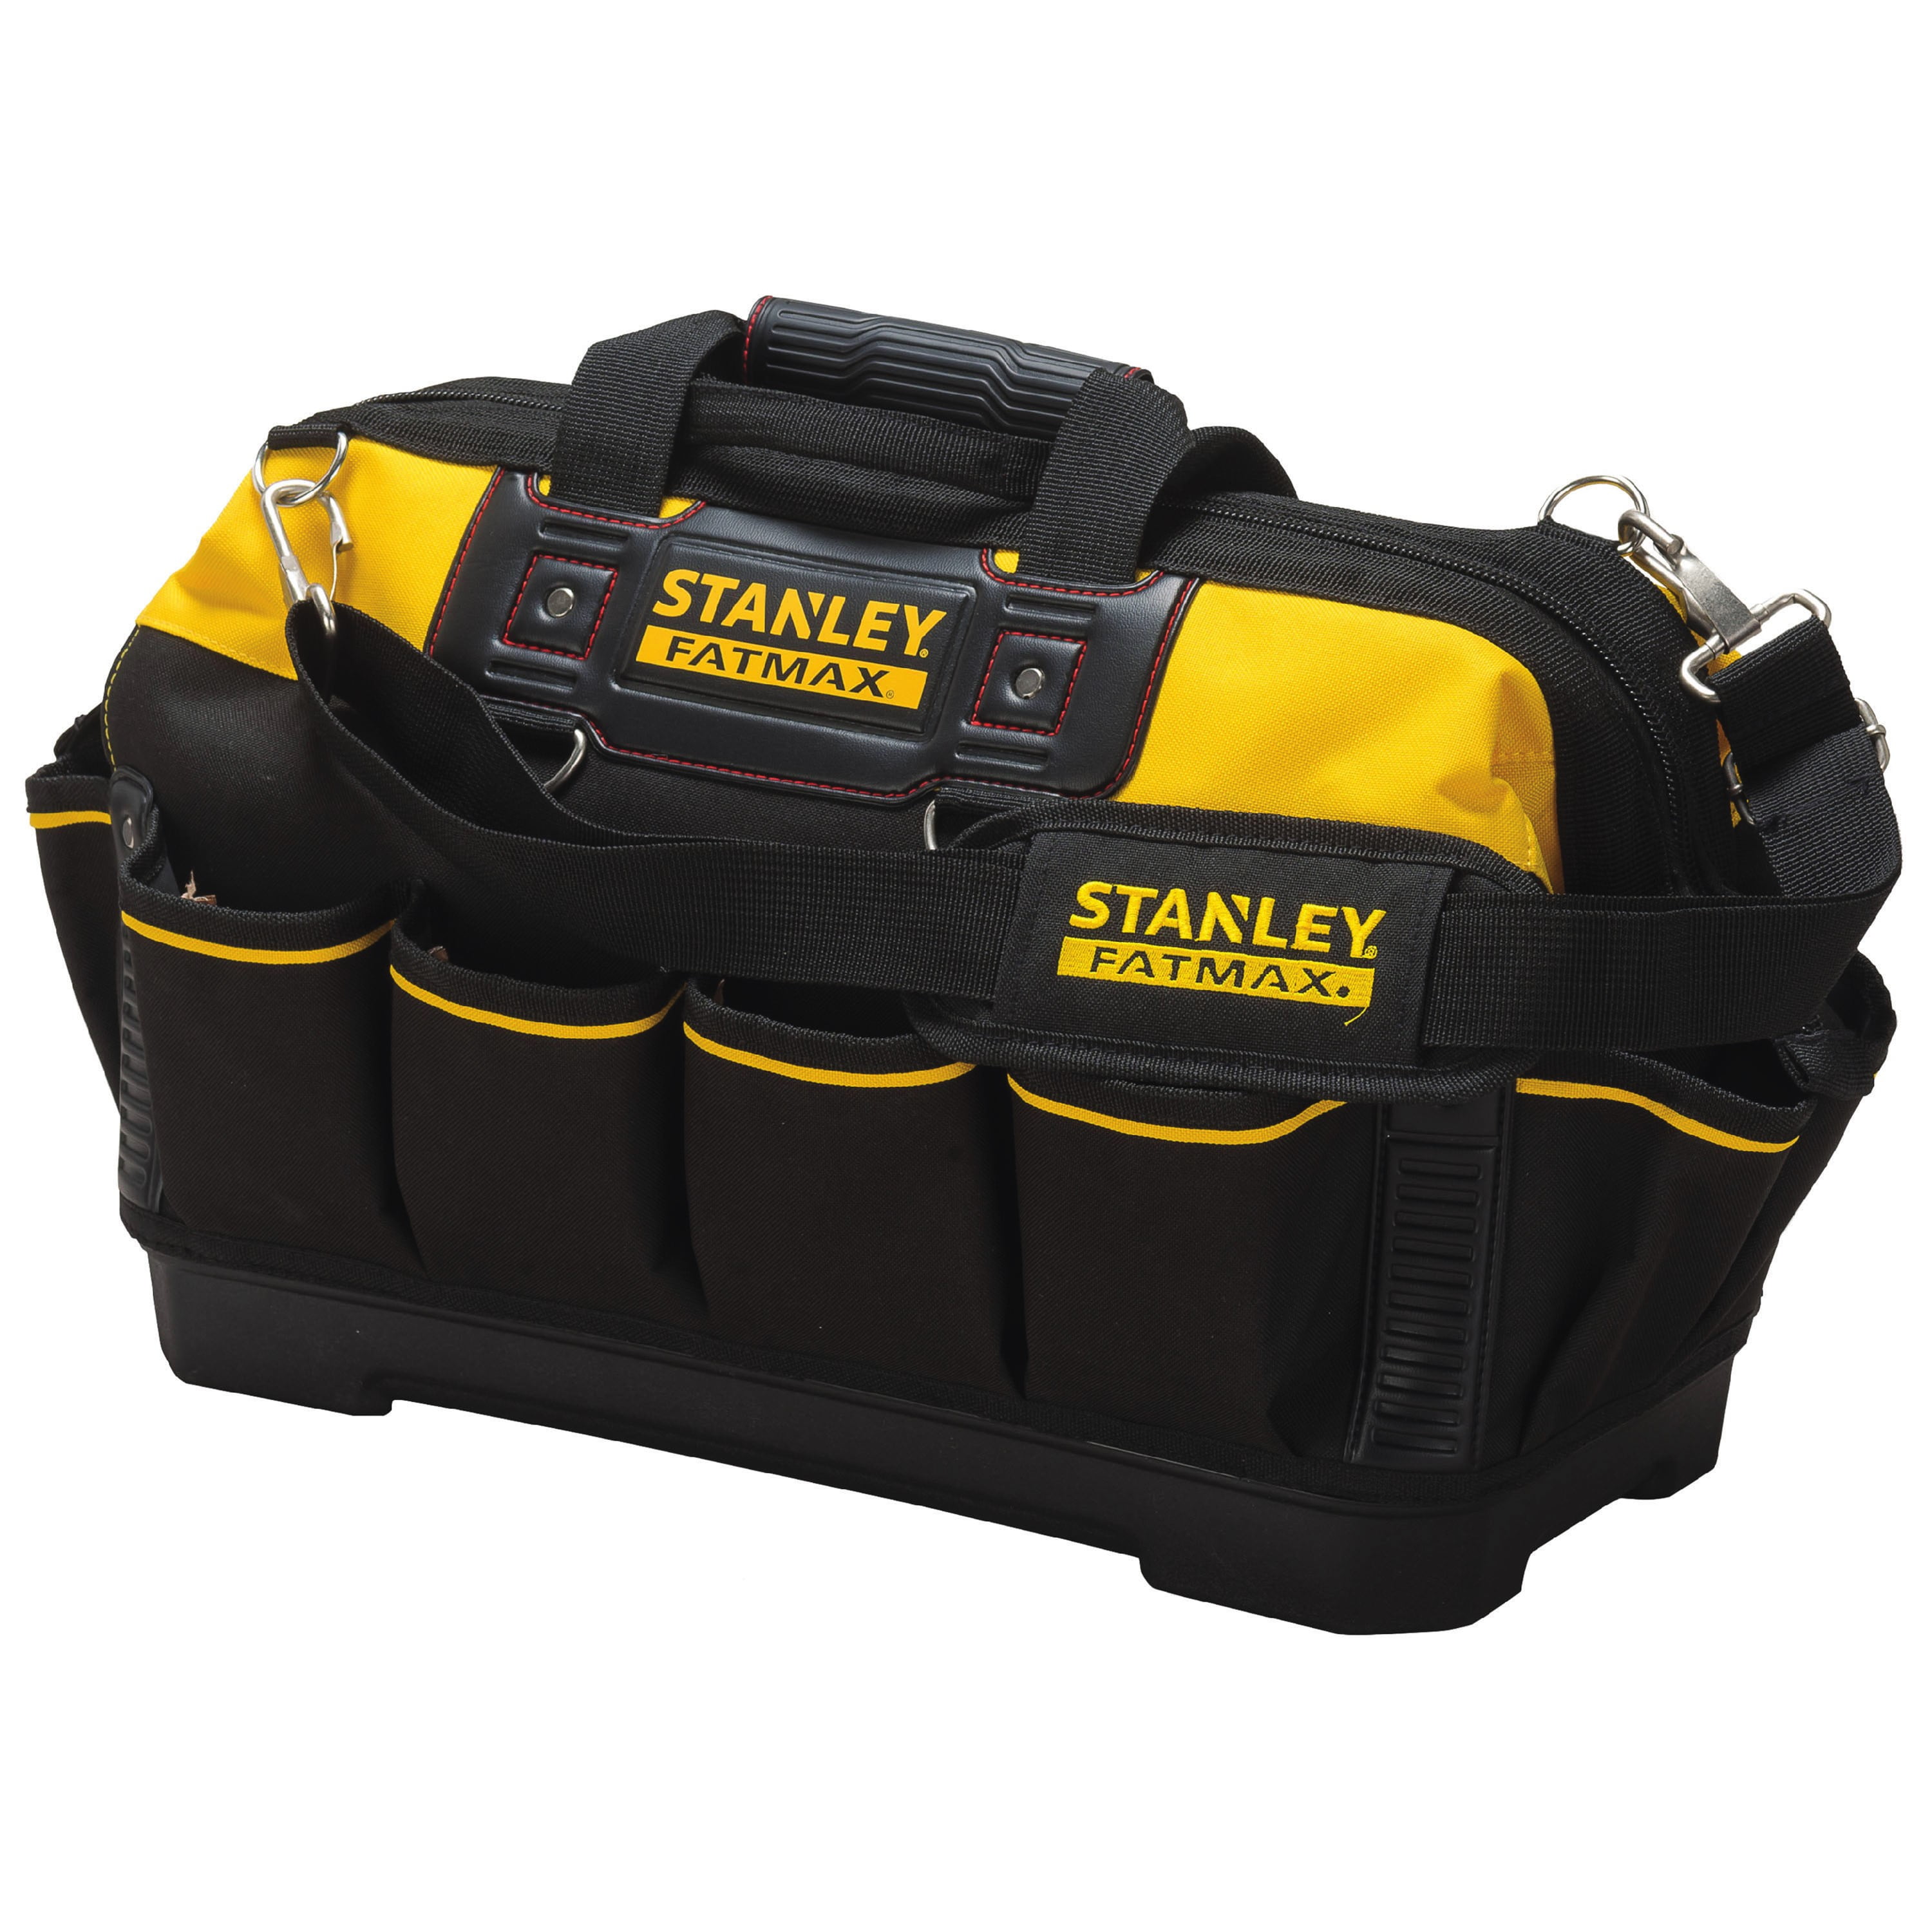 STANLEY FATMAX Open Tote Tool Bag Black/Yellow Open Design  